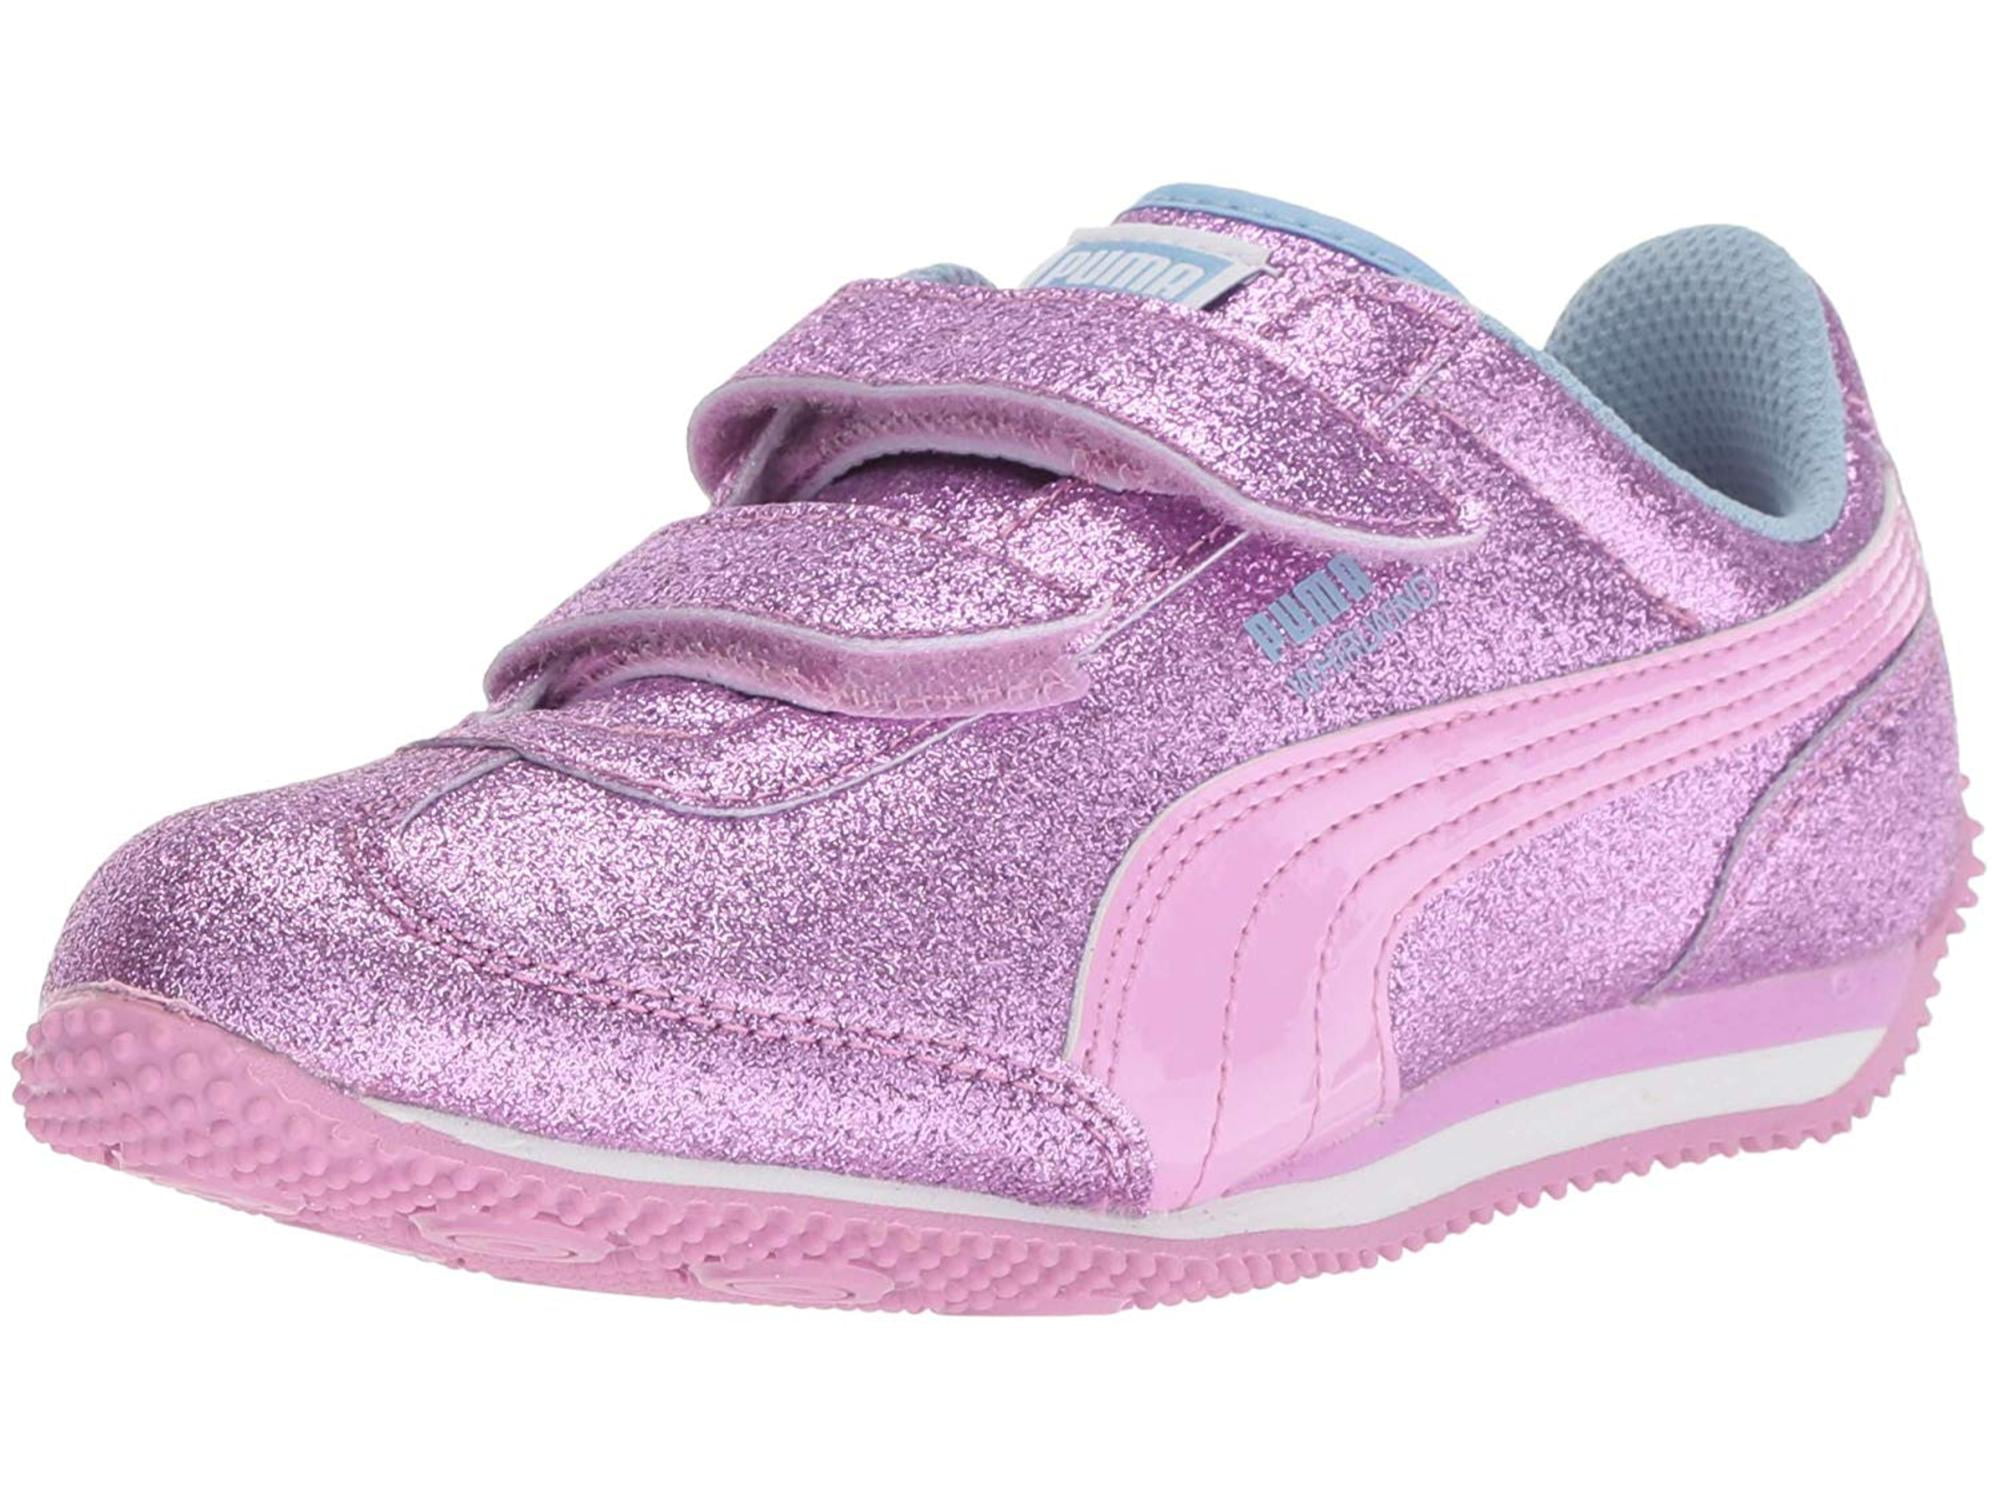 infant puma shoes size 3